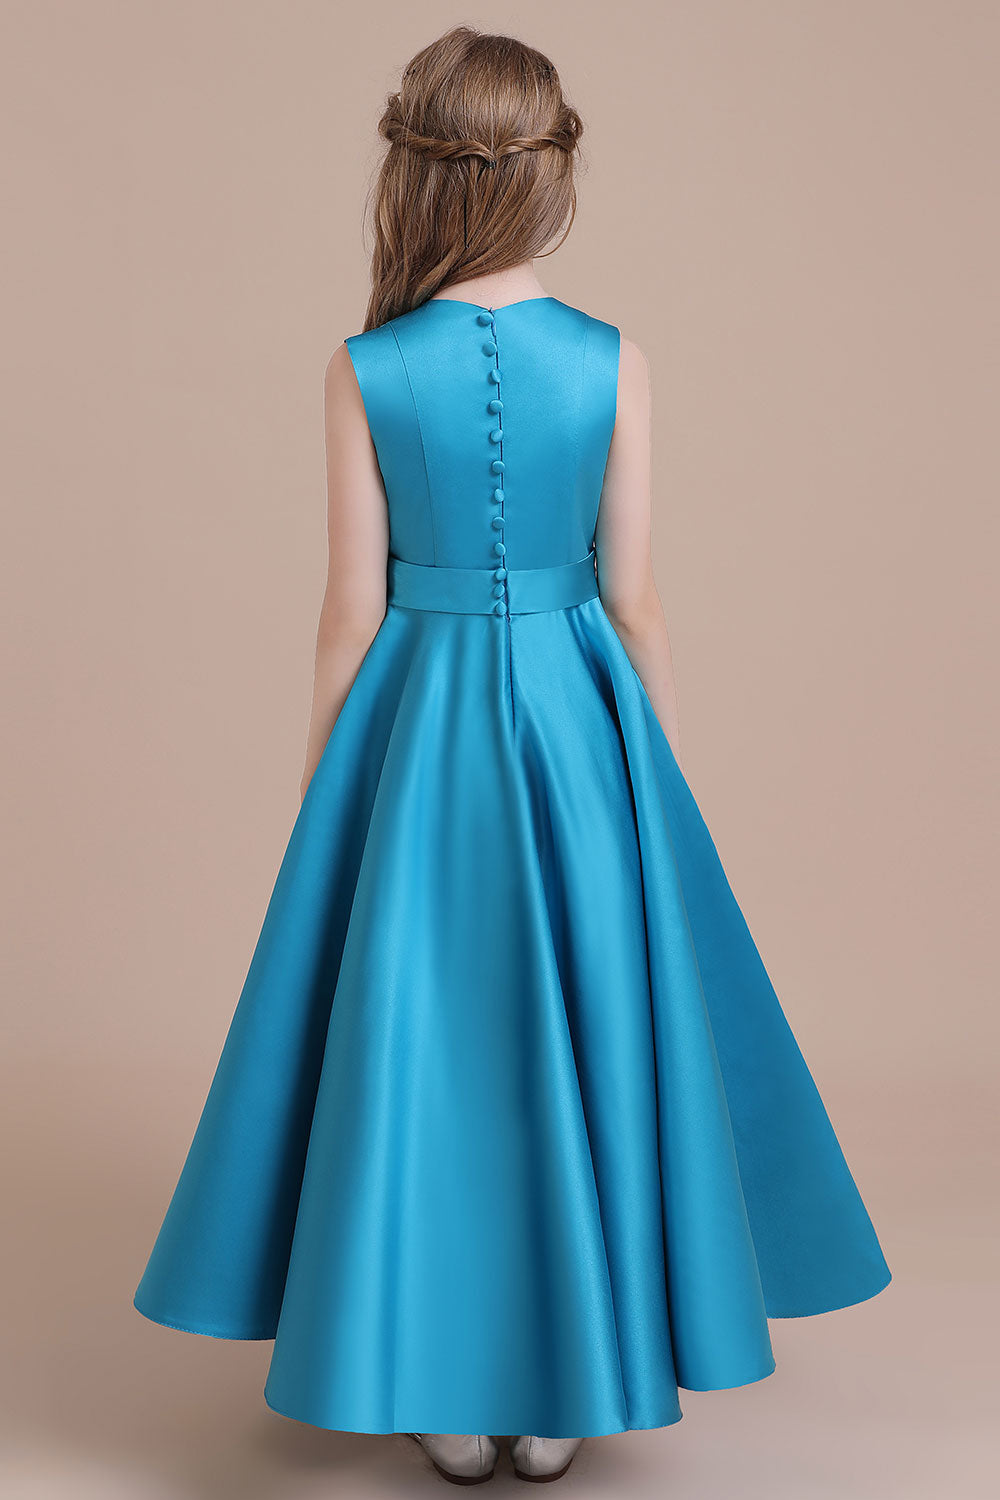 Awesome Sleeveless Satin Flower Girl Dress Aline Grils Blue Flower Dresses